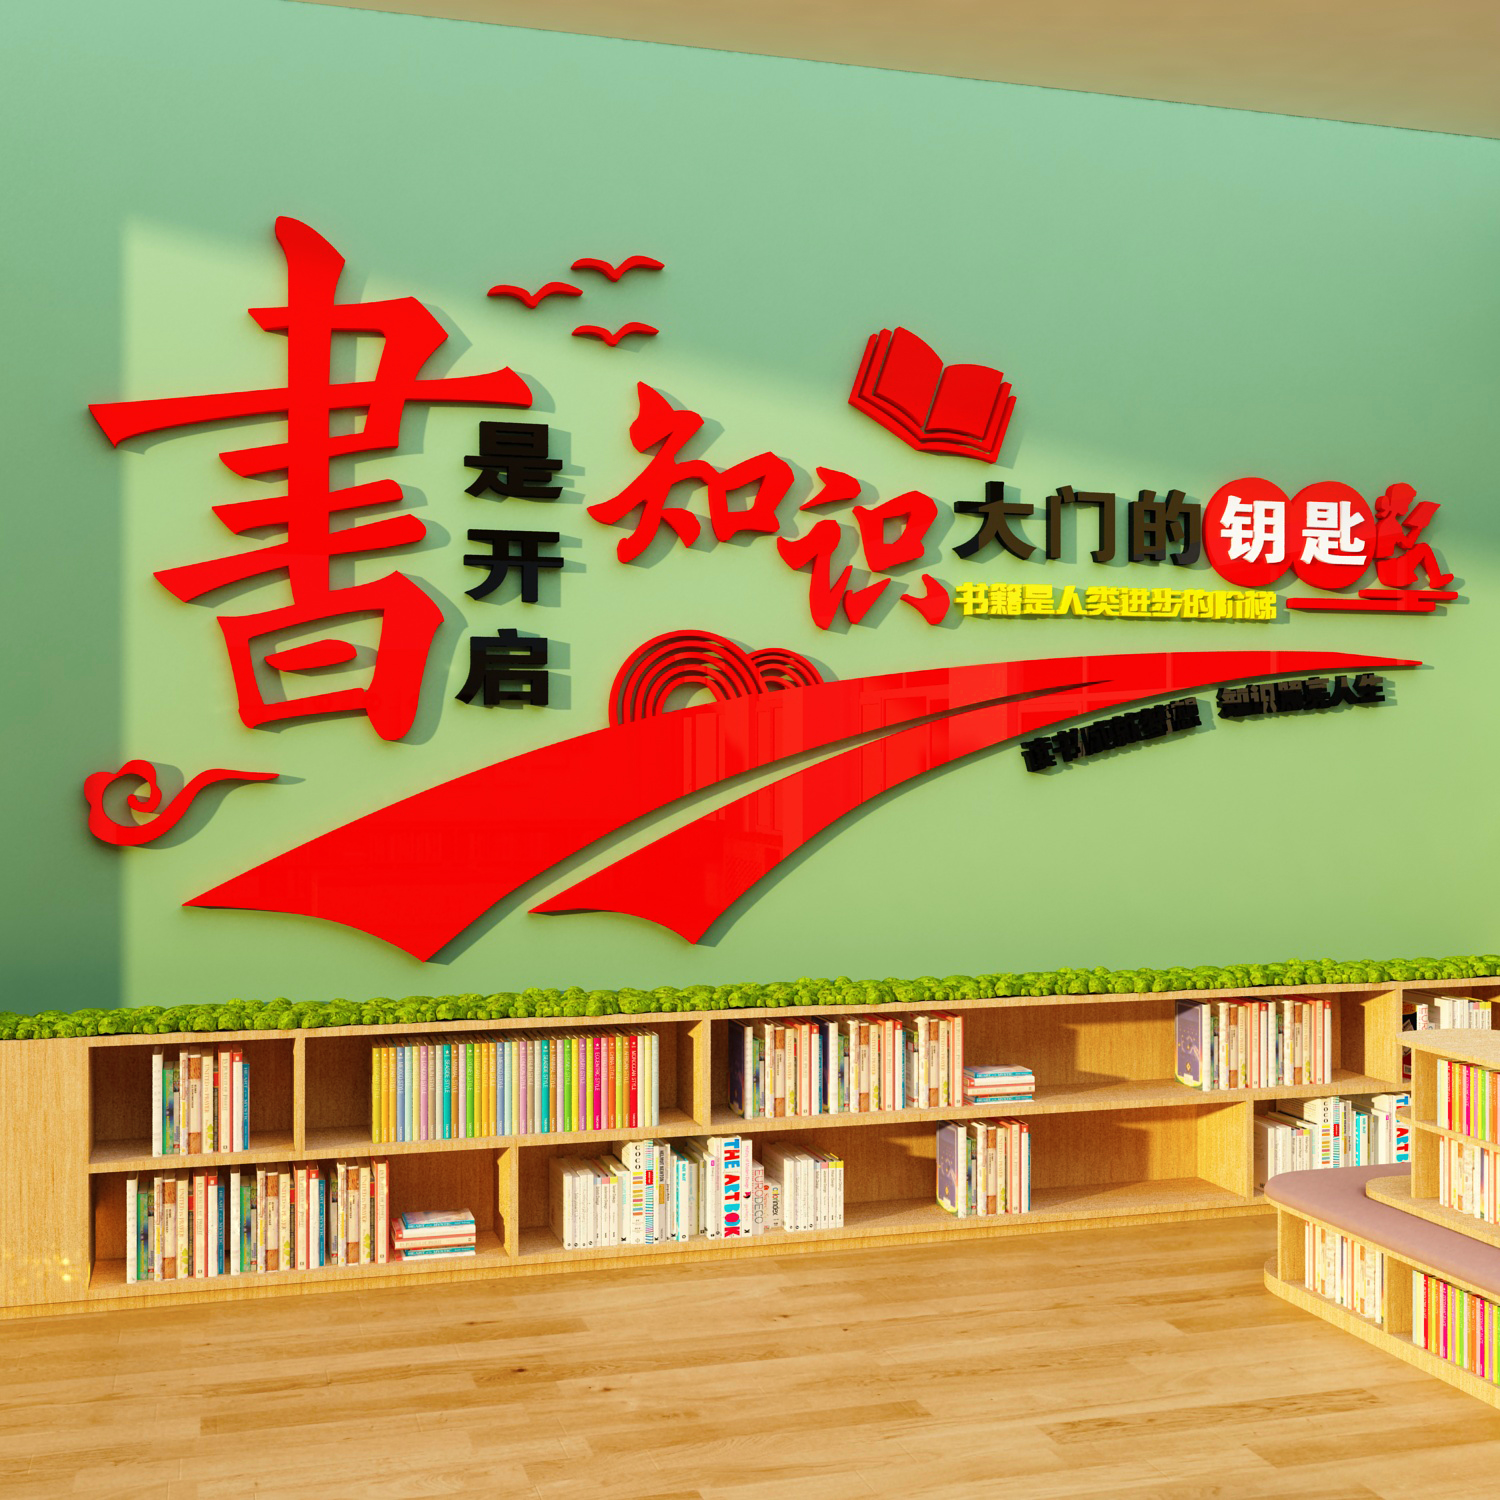 幼儿园读书区文化墙阅览室绘本馆装饰环创墙贴班级图书角教室布置